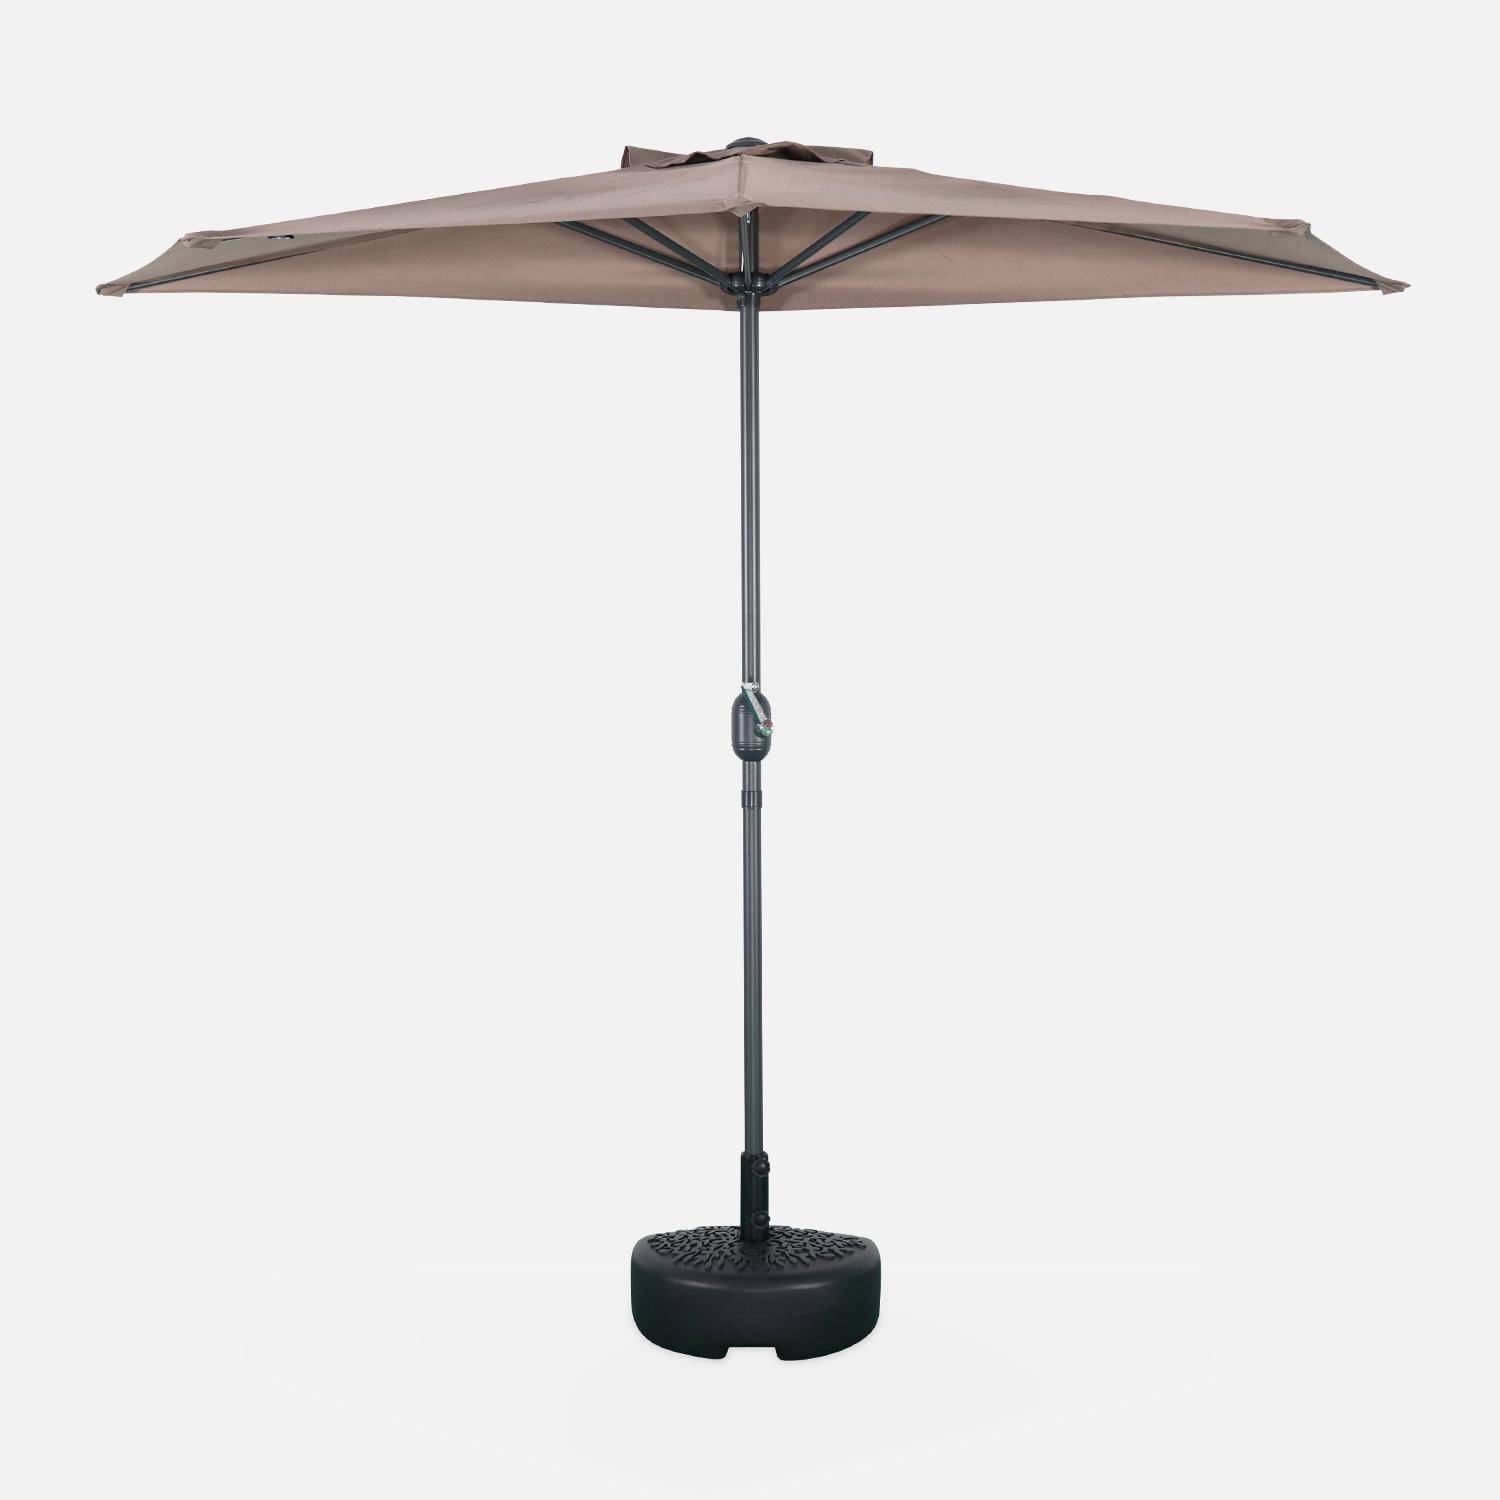  Parasol para balcón Ø250cm  – CALVI – Pequeño parasol recto, mástil en aluminio con manivela, tela color pardo  Photo3